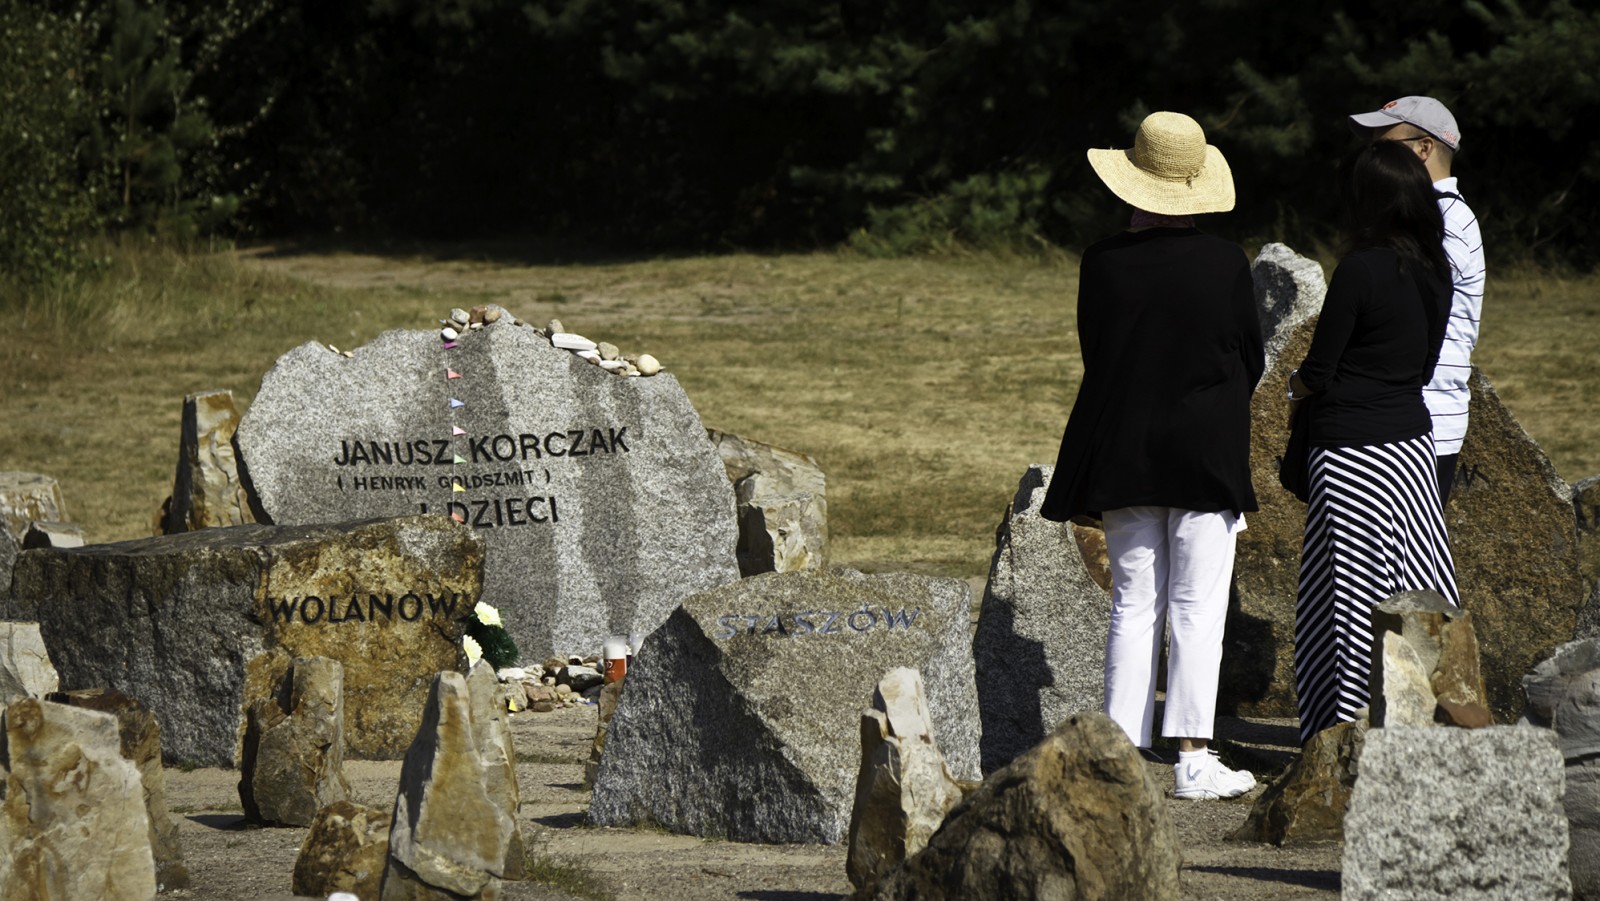 Trzy osoby stoją przy kamieniu upamiętniającym Janusza Korczaka.